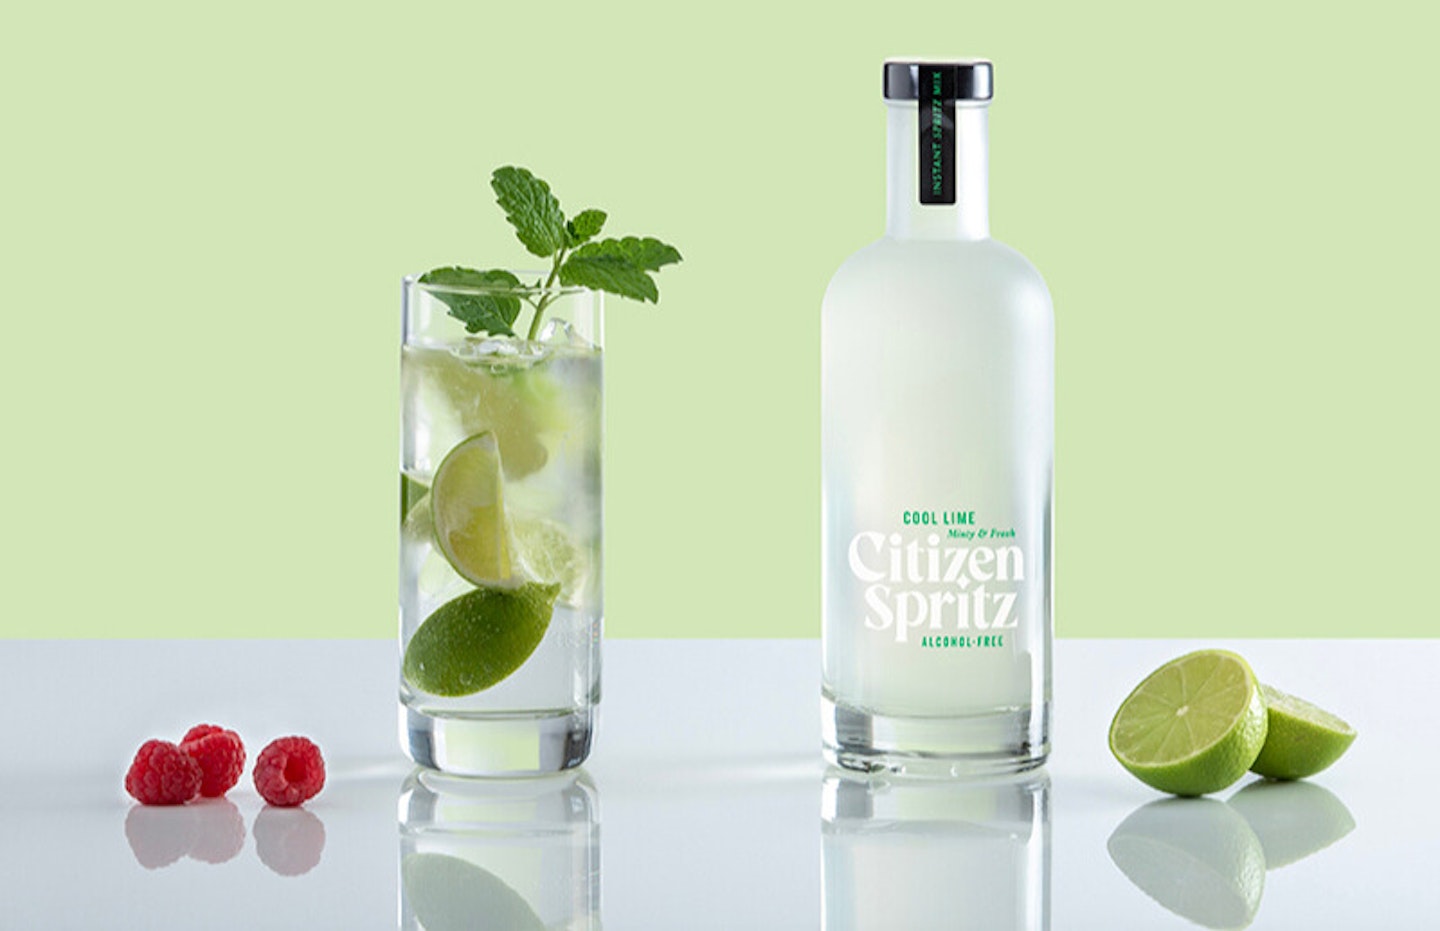 Citizen Spritz - non-alcoholic cocktails